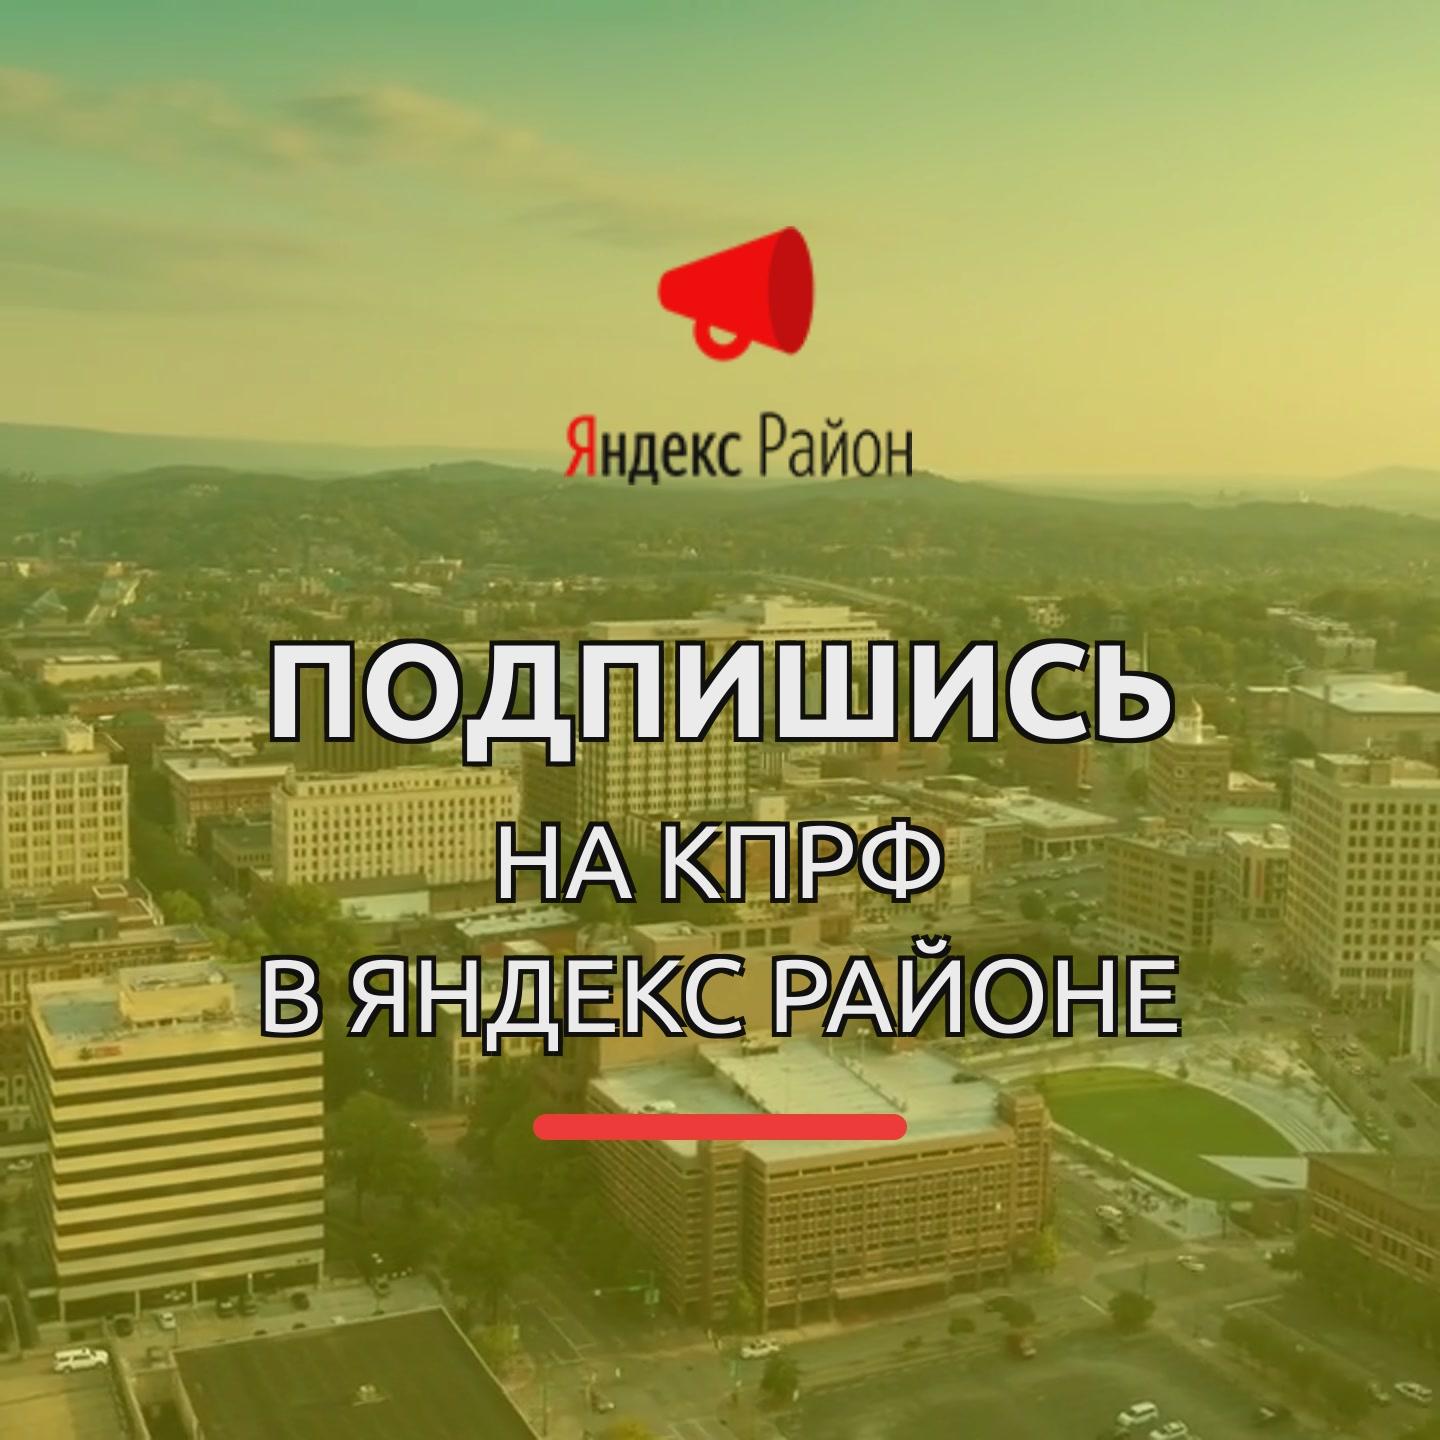 Подписывайтесь на КПРФ в Яндекс Районе